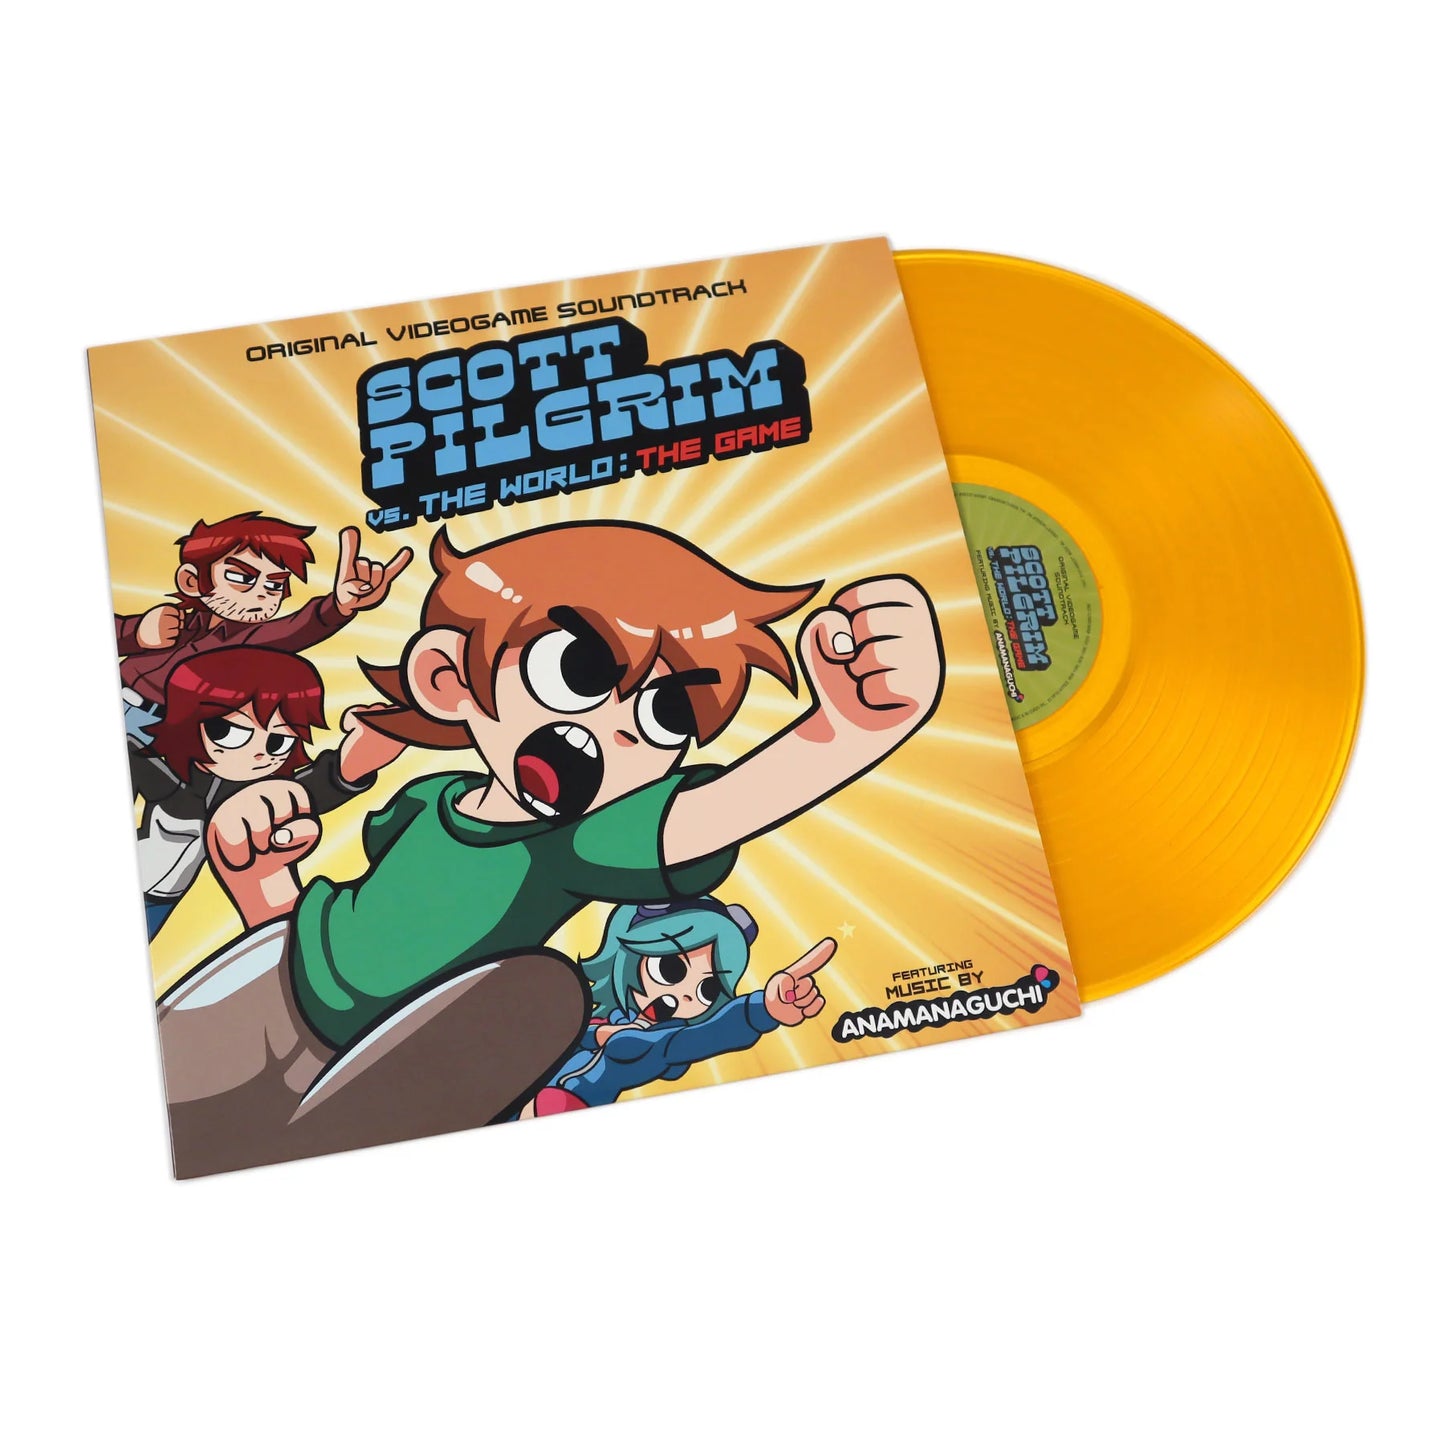 Anamanaguchi ''Scott Pilgrim Vs. The World: The Game (Original Videogame Soundtrack)'' LP (Orange Vinyl)